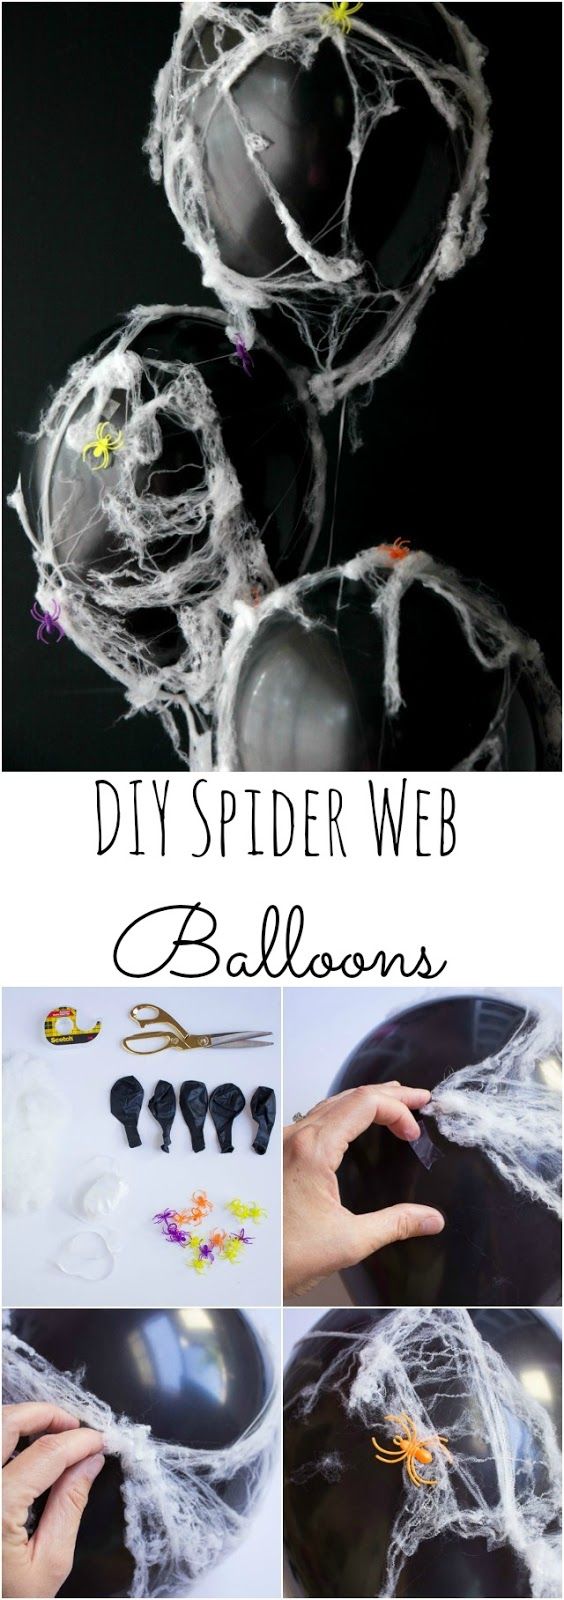 10 ideas sorprendentes para decorar con globos en Halloween 11